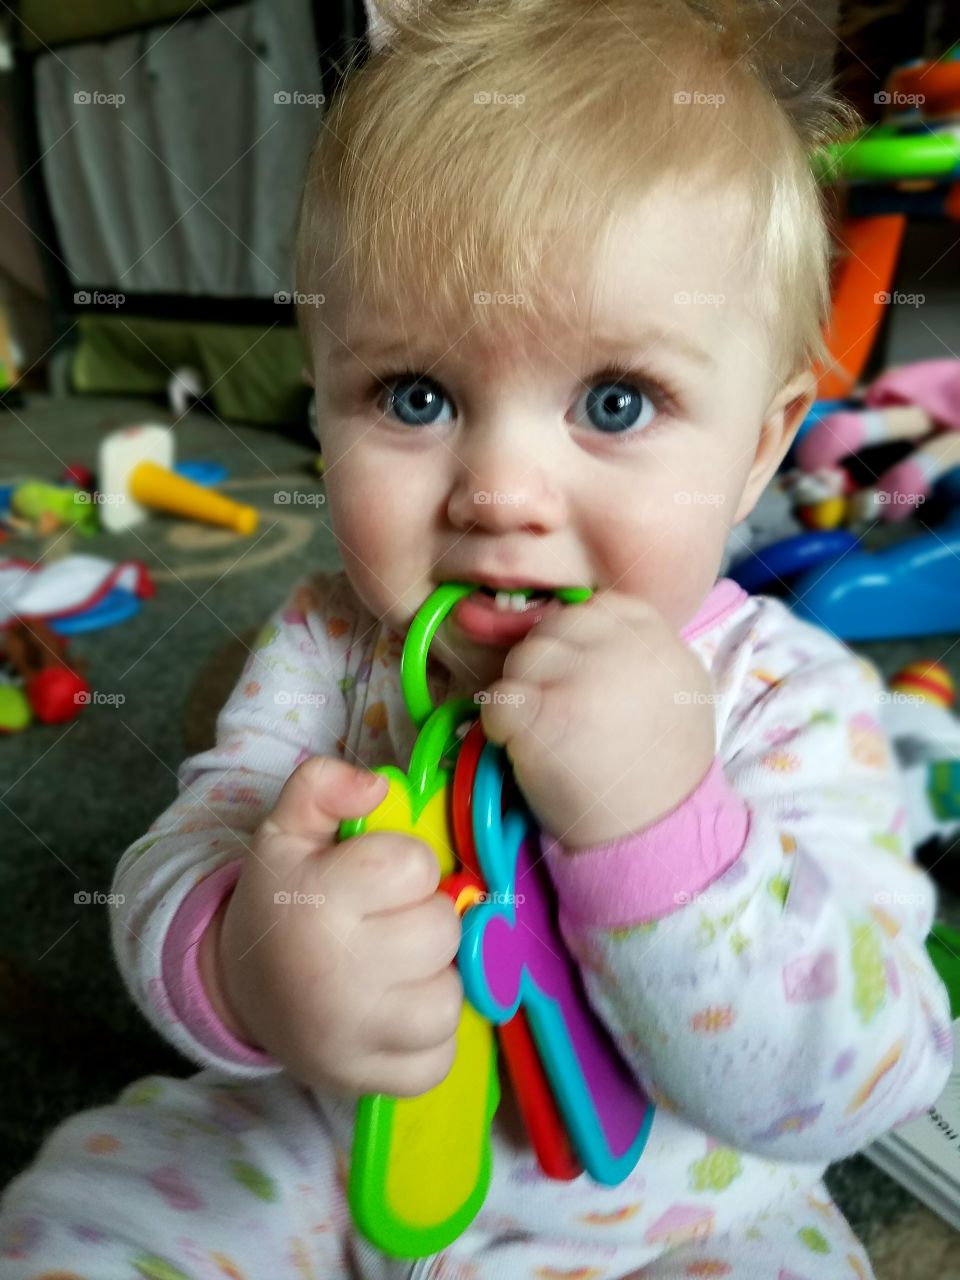 Baby biting key toy